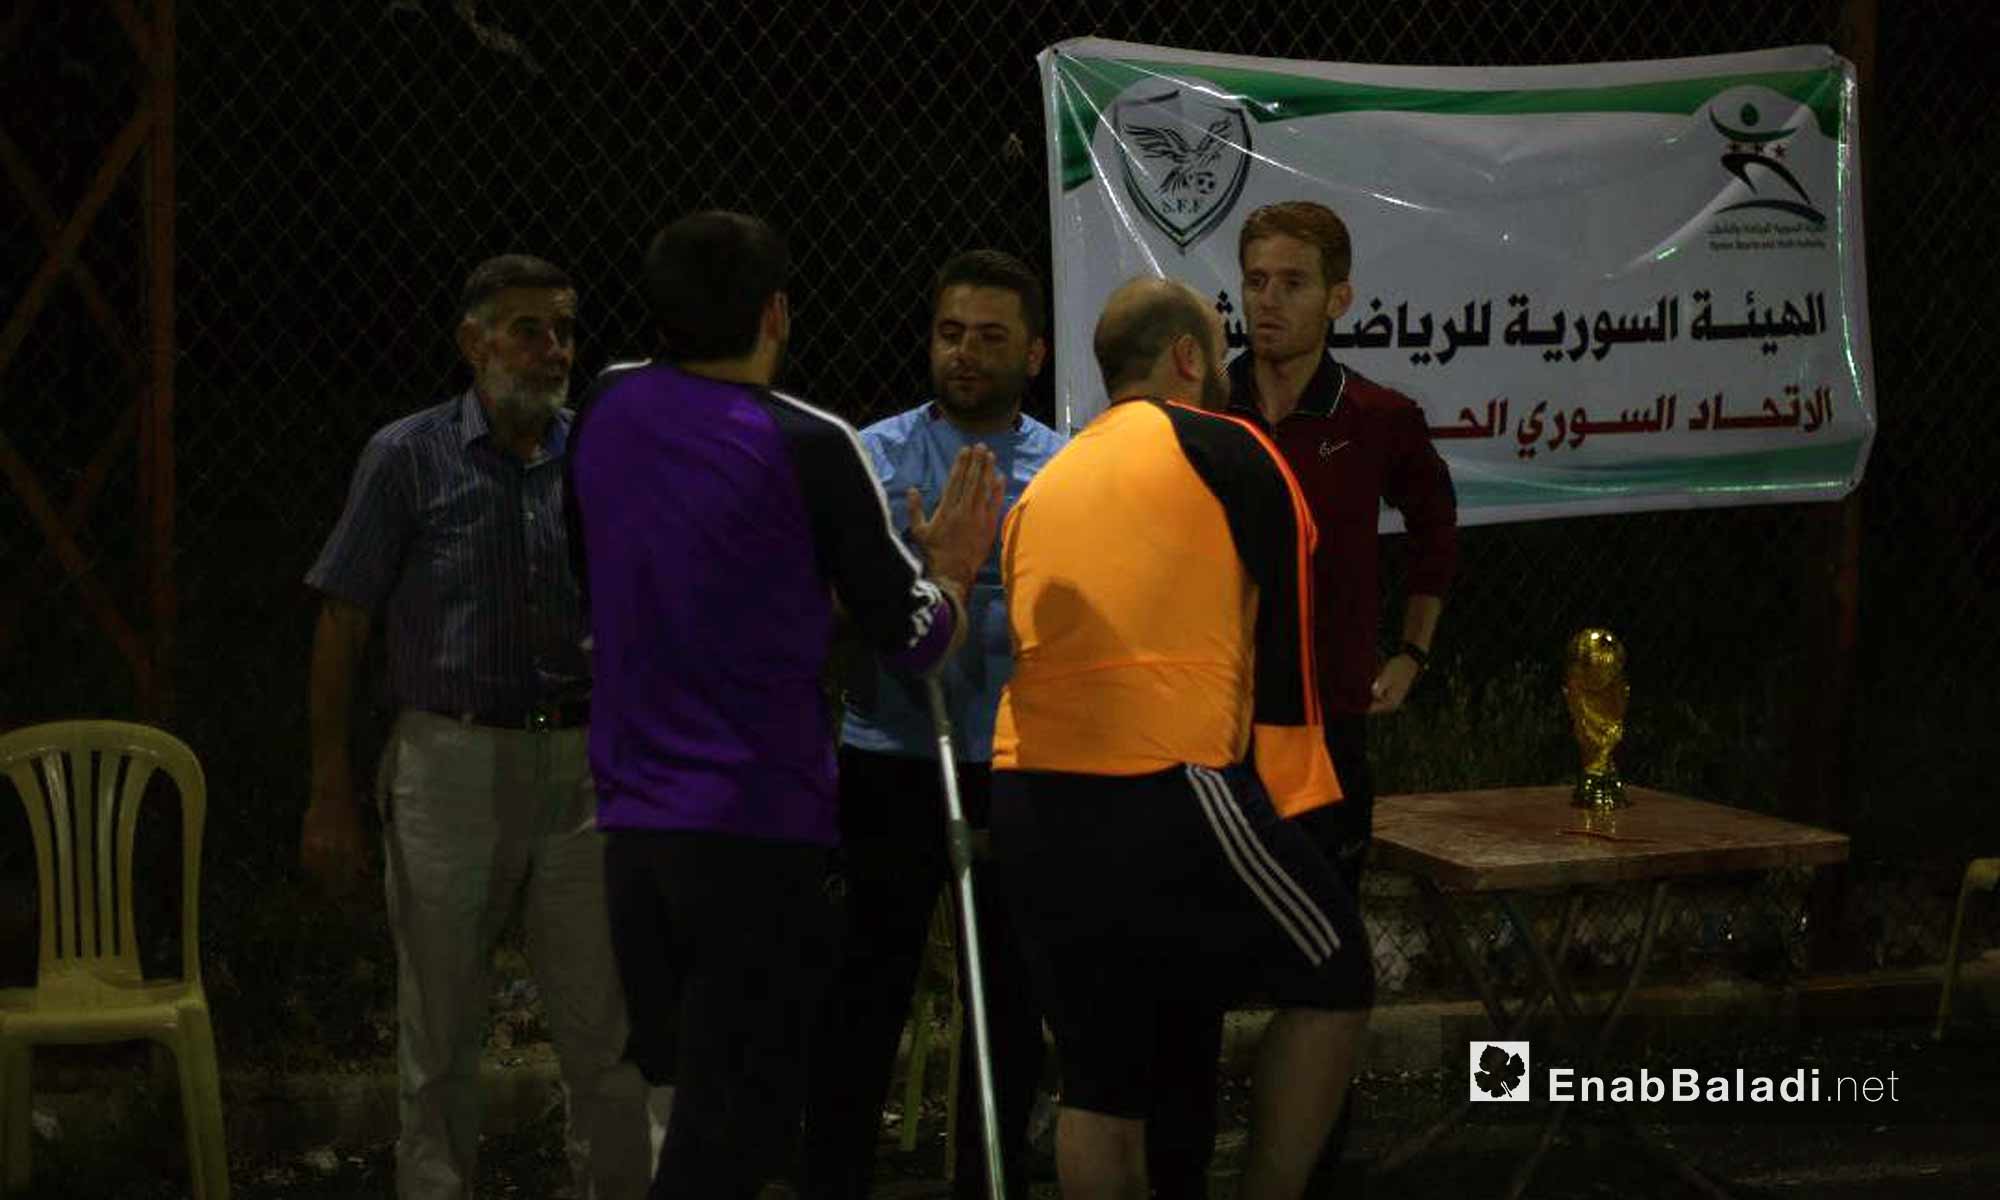 تكريم اللاعبين في مباراة لمبتوري الأطراف في ريف إدلب - في 25 أيار 2018 (عنب بلدي)